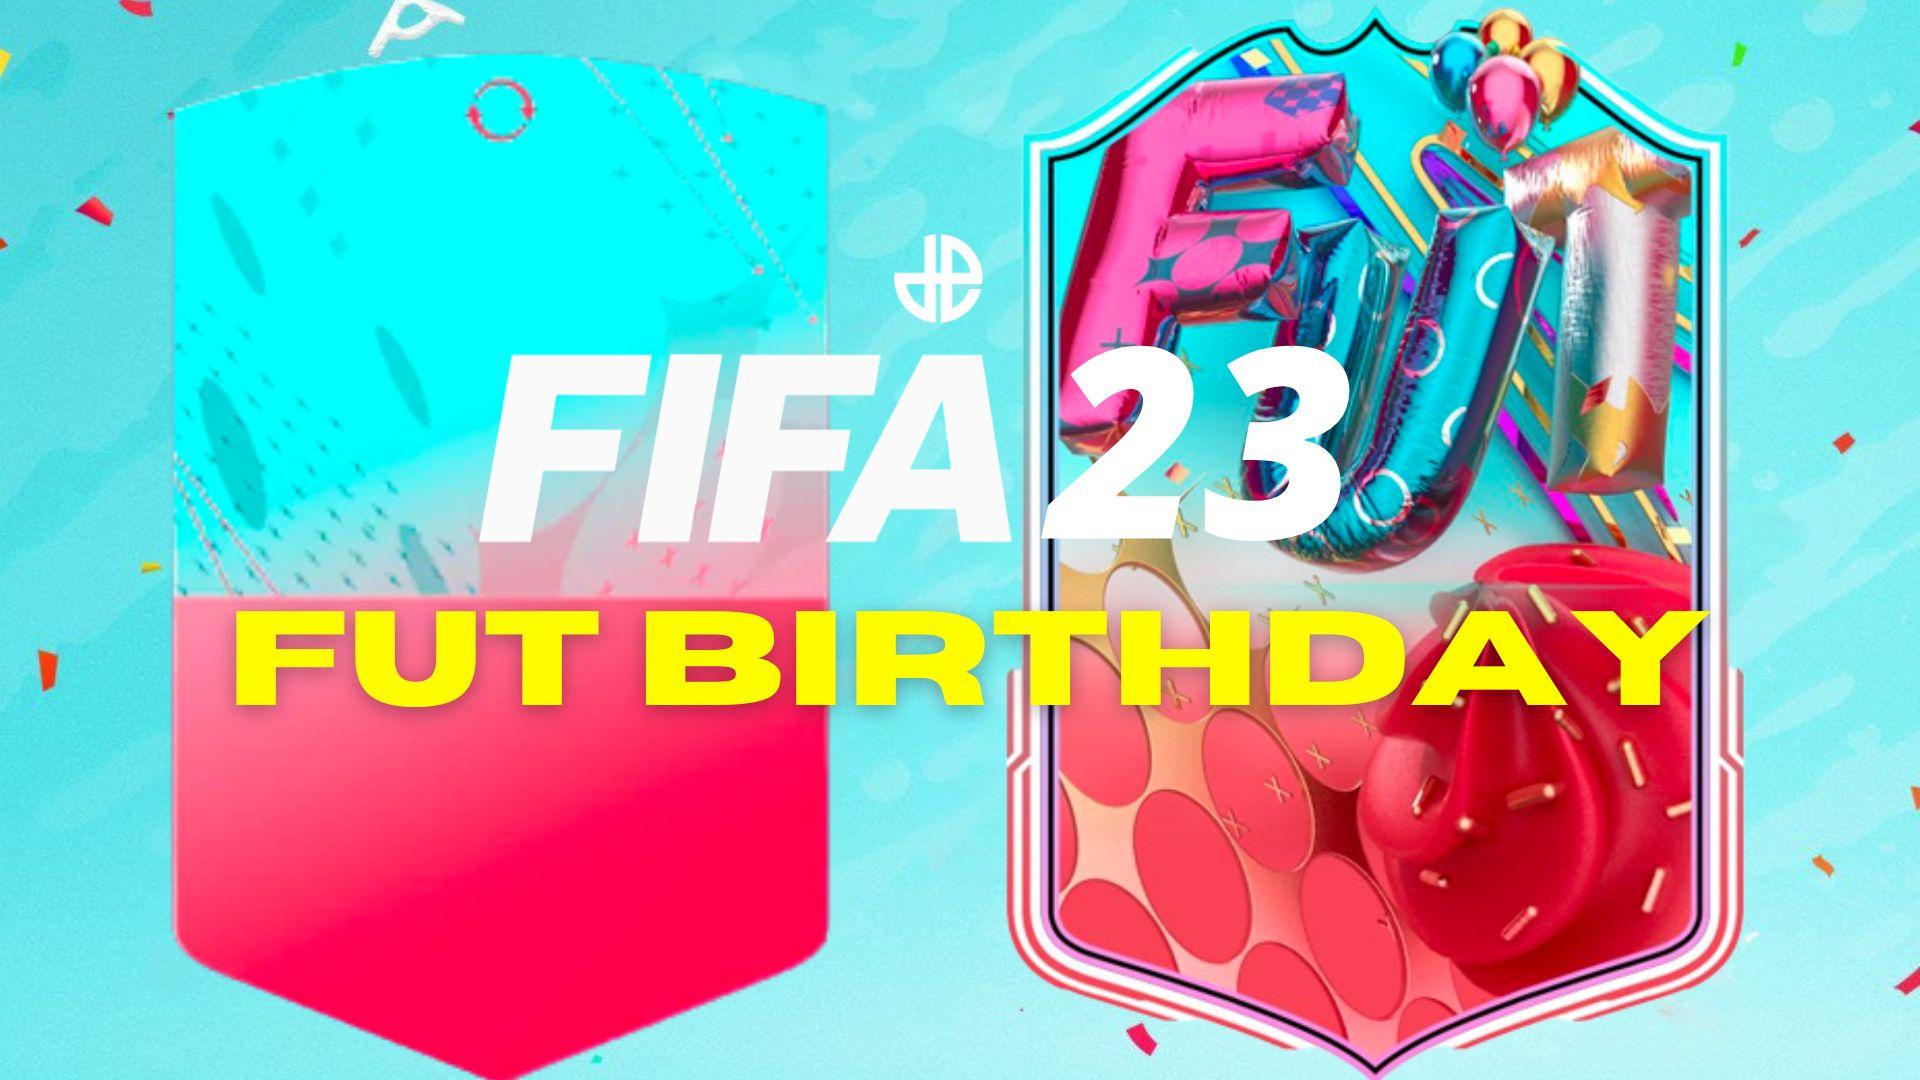 FIFA 23 FUT Birthday cards and text logo